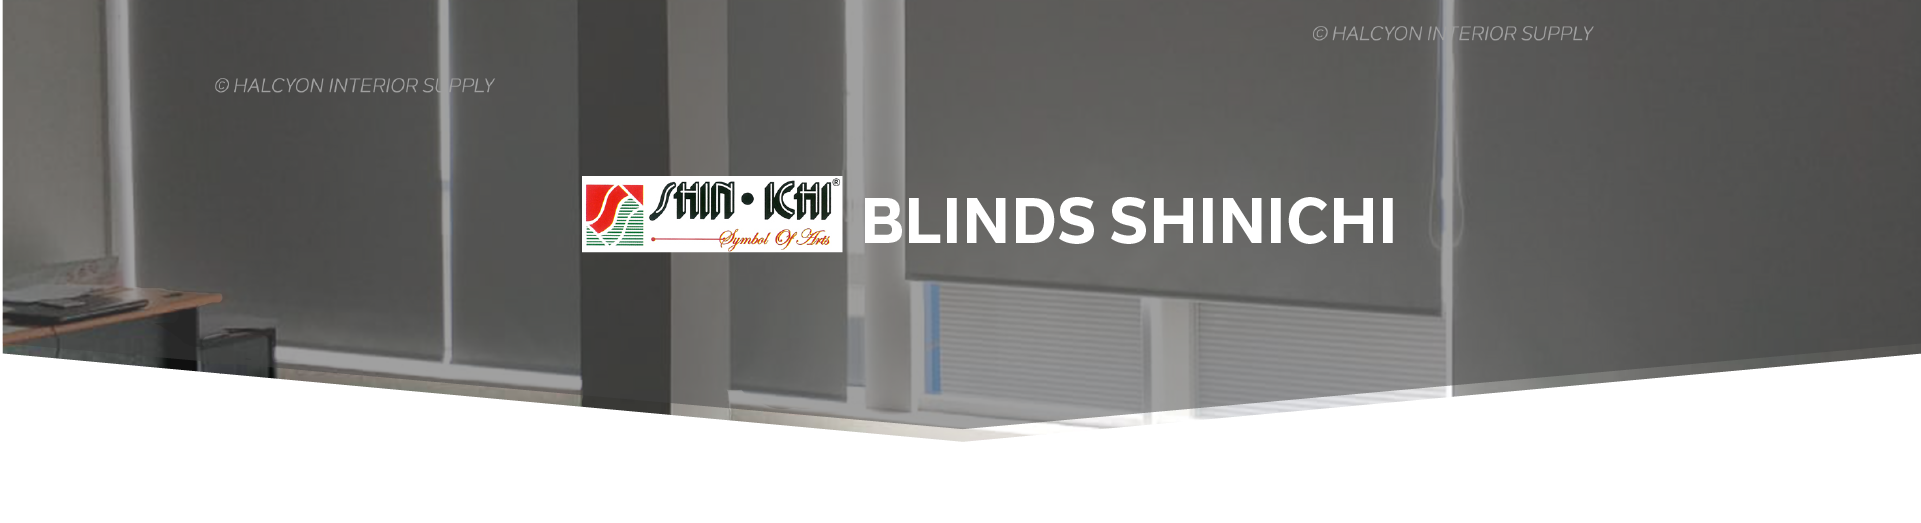 SHINICHI BLINDS Cover